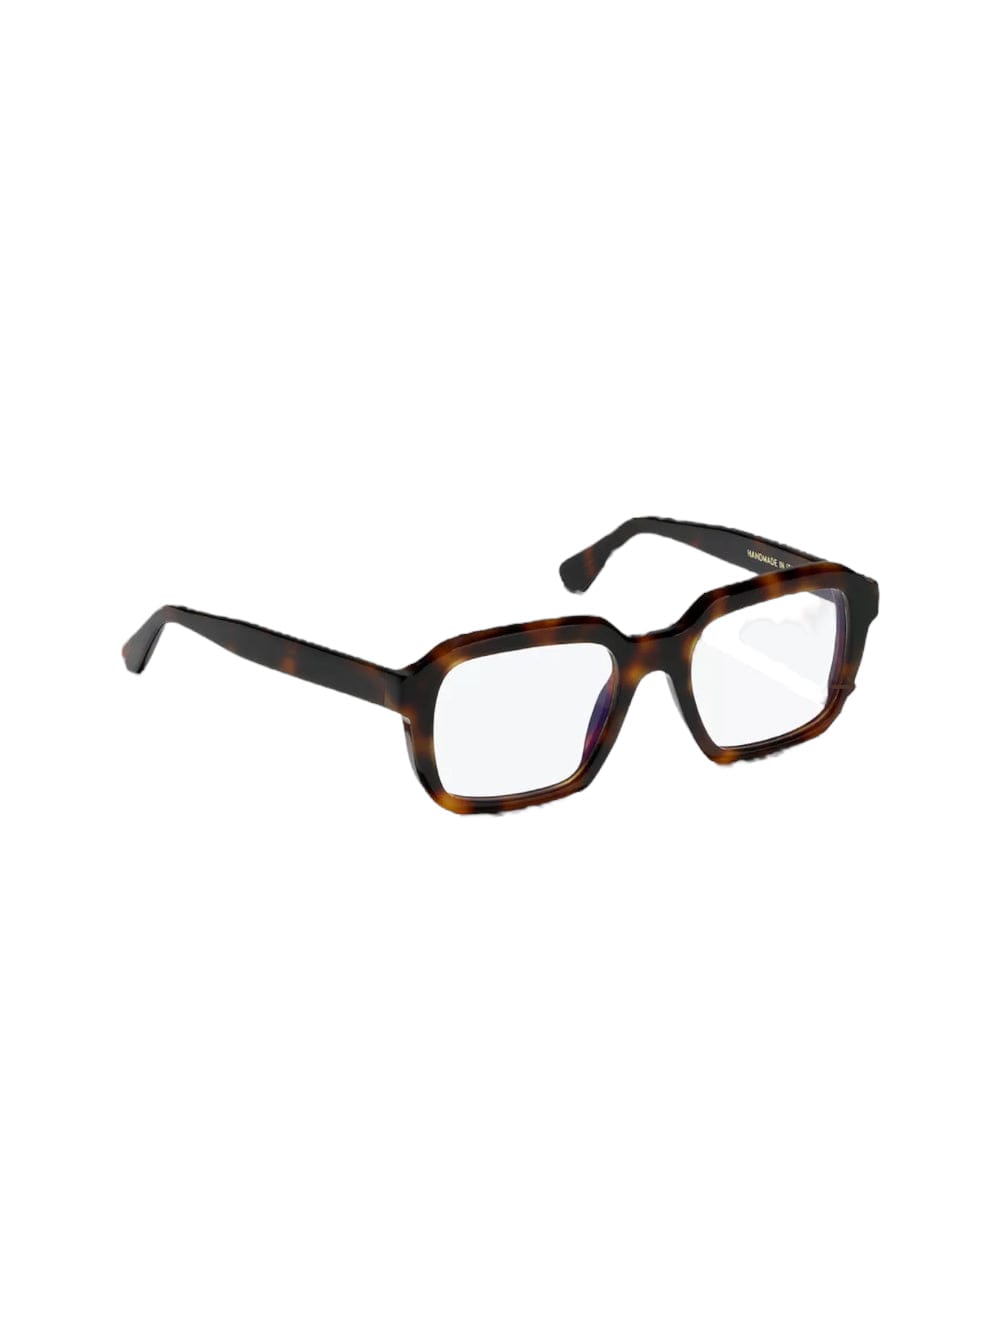 L.g.r. Raffaello - Black Glasses